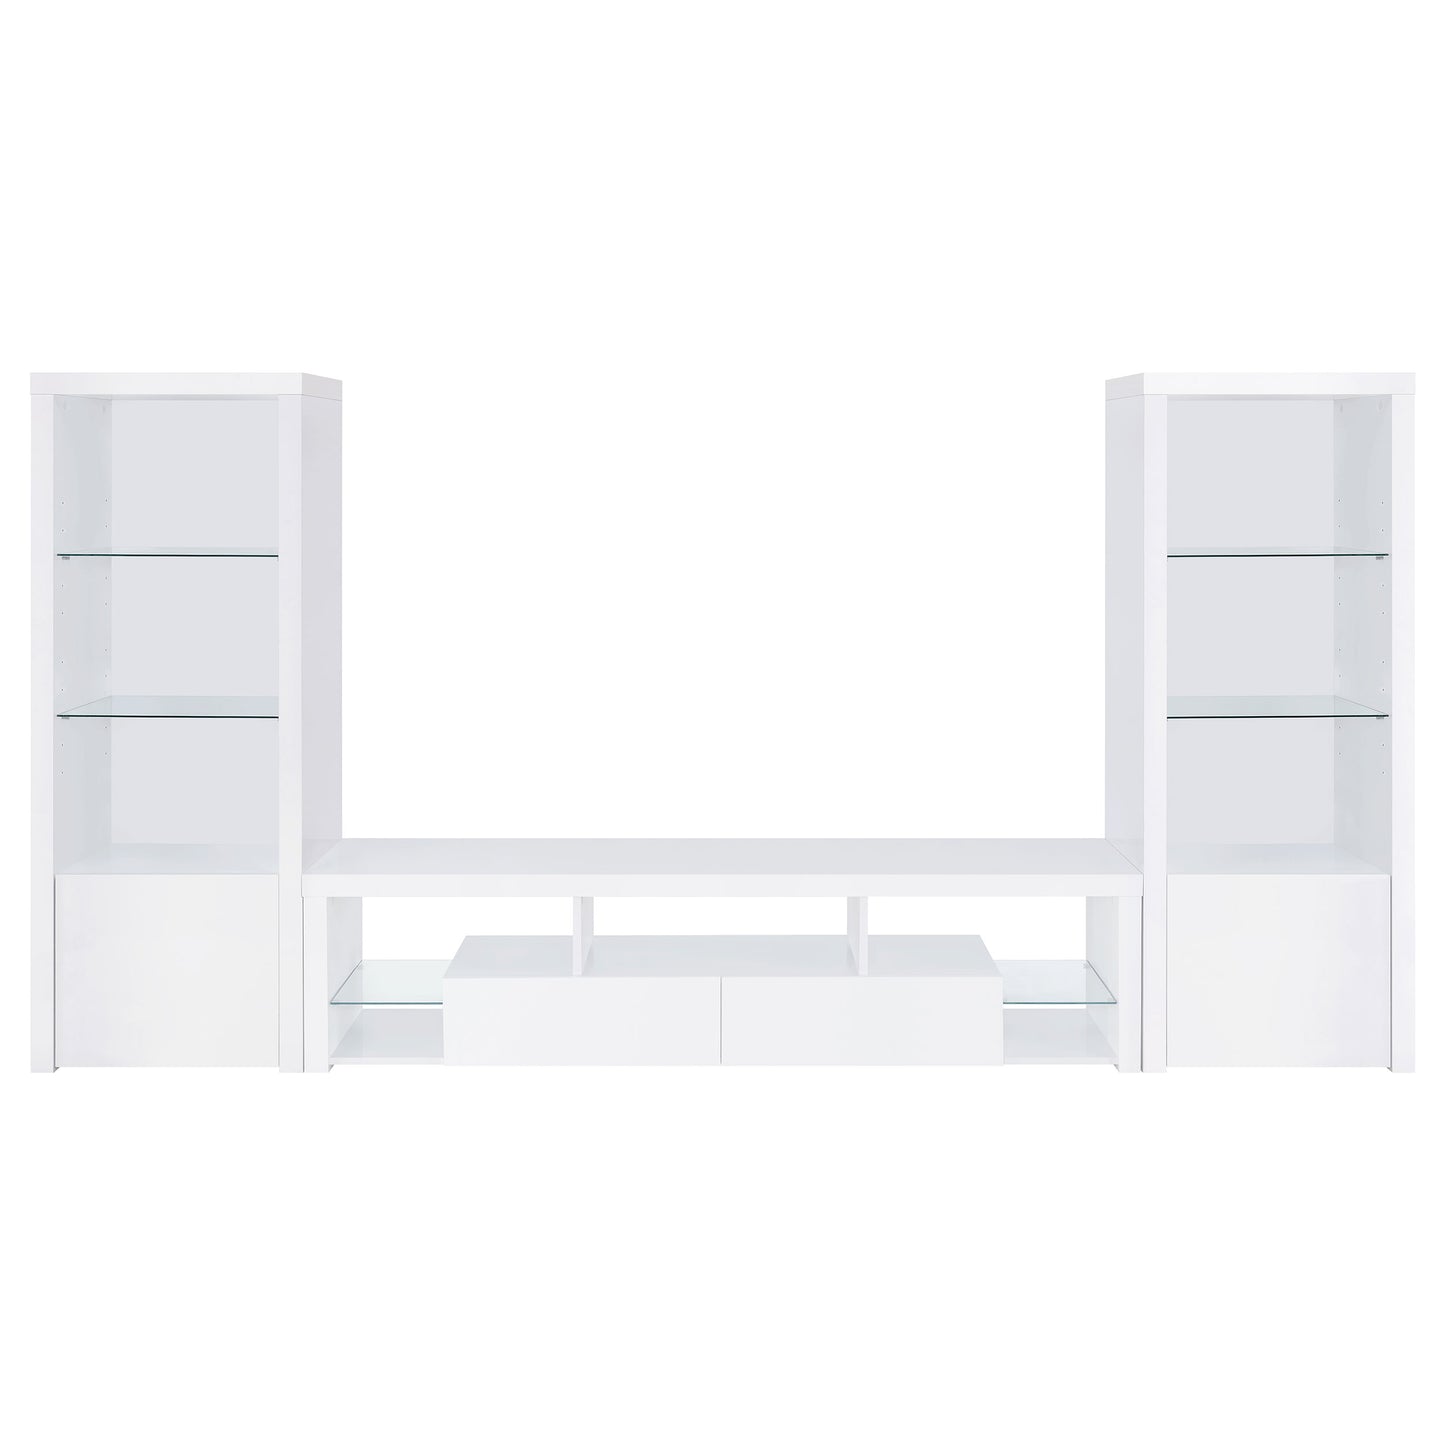 Jude 2-drawer Engineered Wood 71" TV Stand High Gloss White